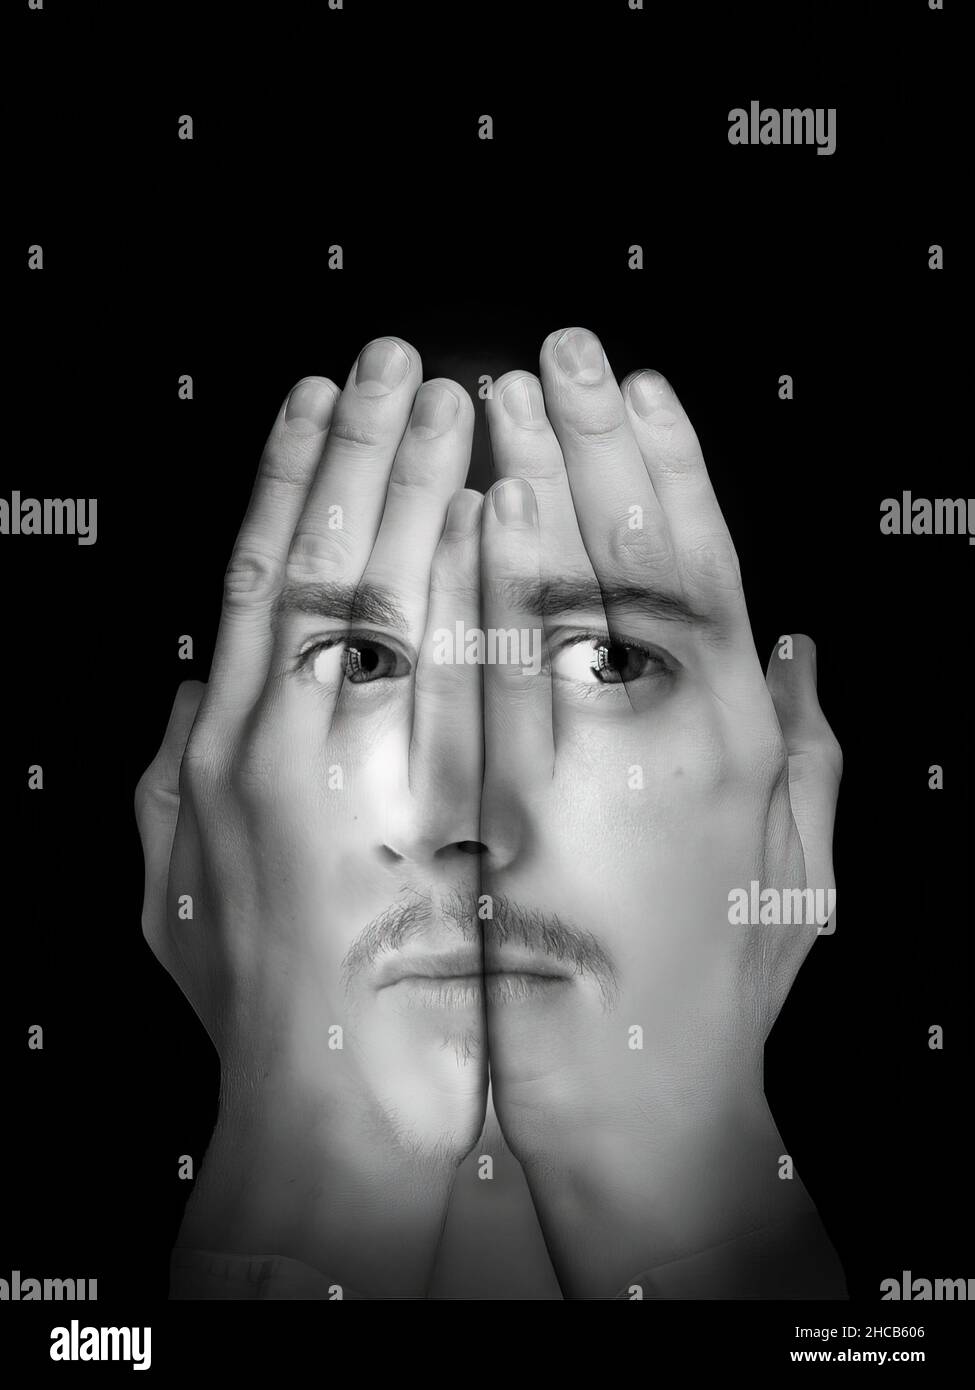 Fotomontage des Gesichts eines hübschen jungen Mannes mit einem Schnurrbart auf einem Paar ausgestreckter Hände. Schwarzweiß-Fotografie. Stockfoto